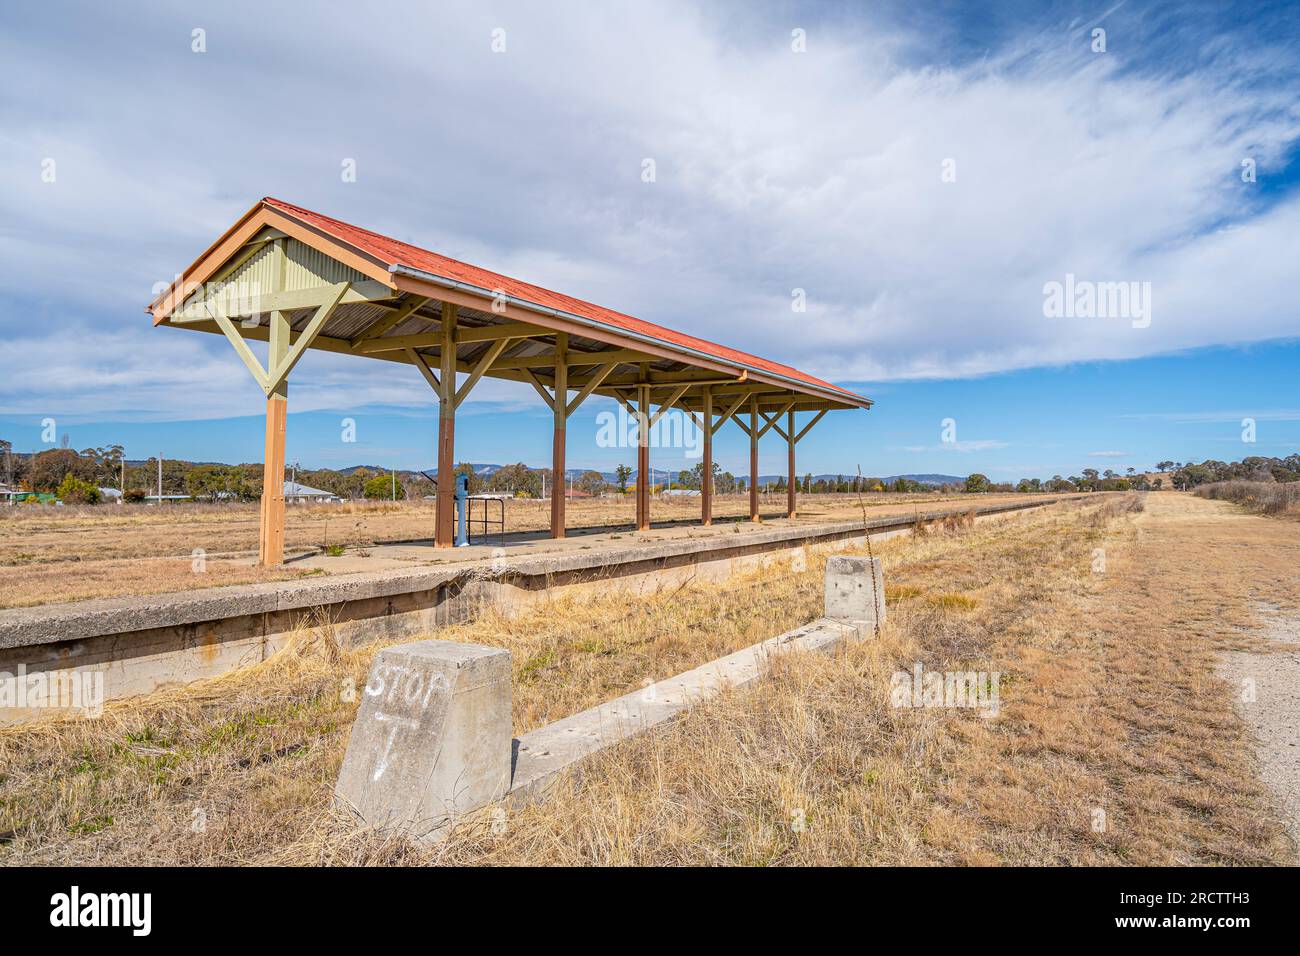 Ancienne plate-forme de la gare historique de Wallangarra Railway Station, Wallangarra, Queensland Nouvelle-Galles du Sud frontière, Queensland, Australie Banque D'Images